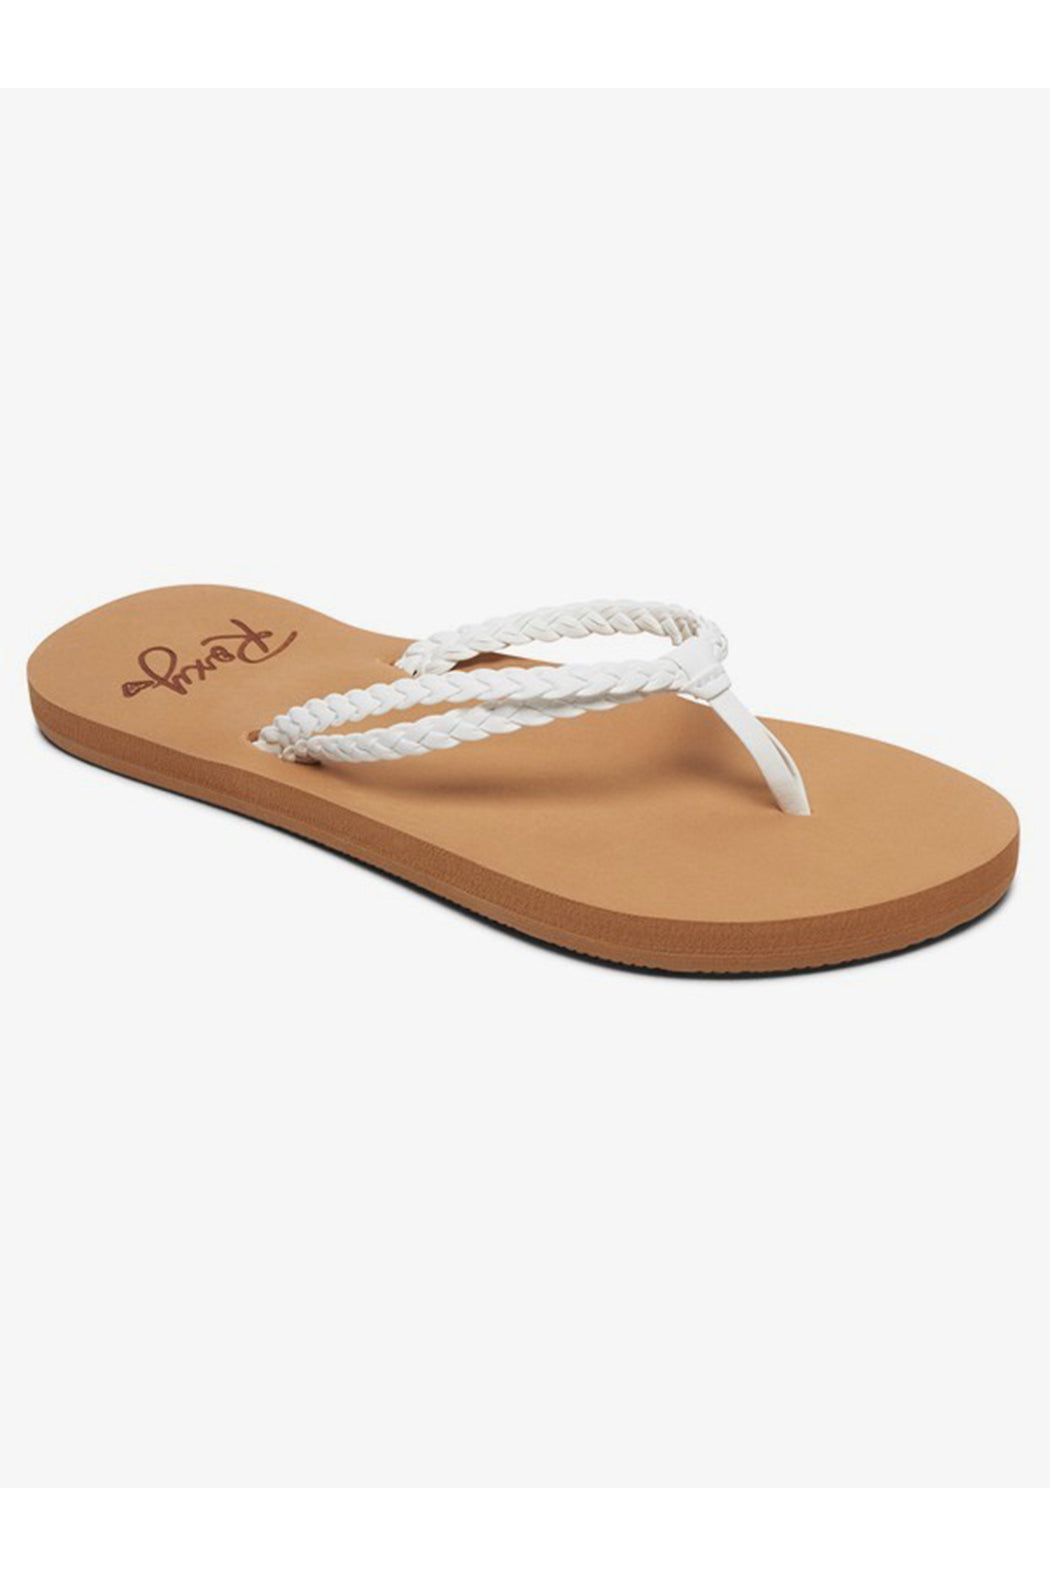 Roxy Costas II Sandal - White